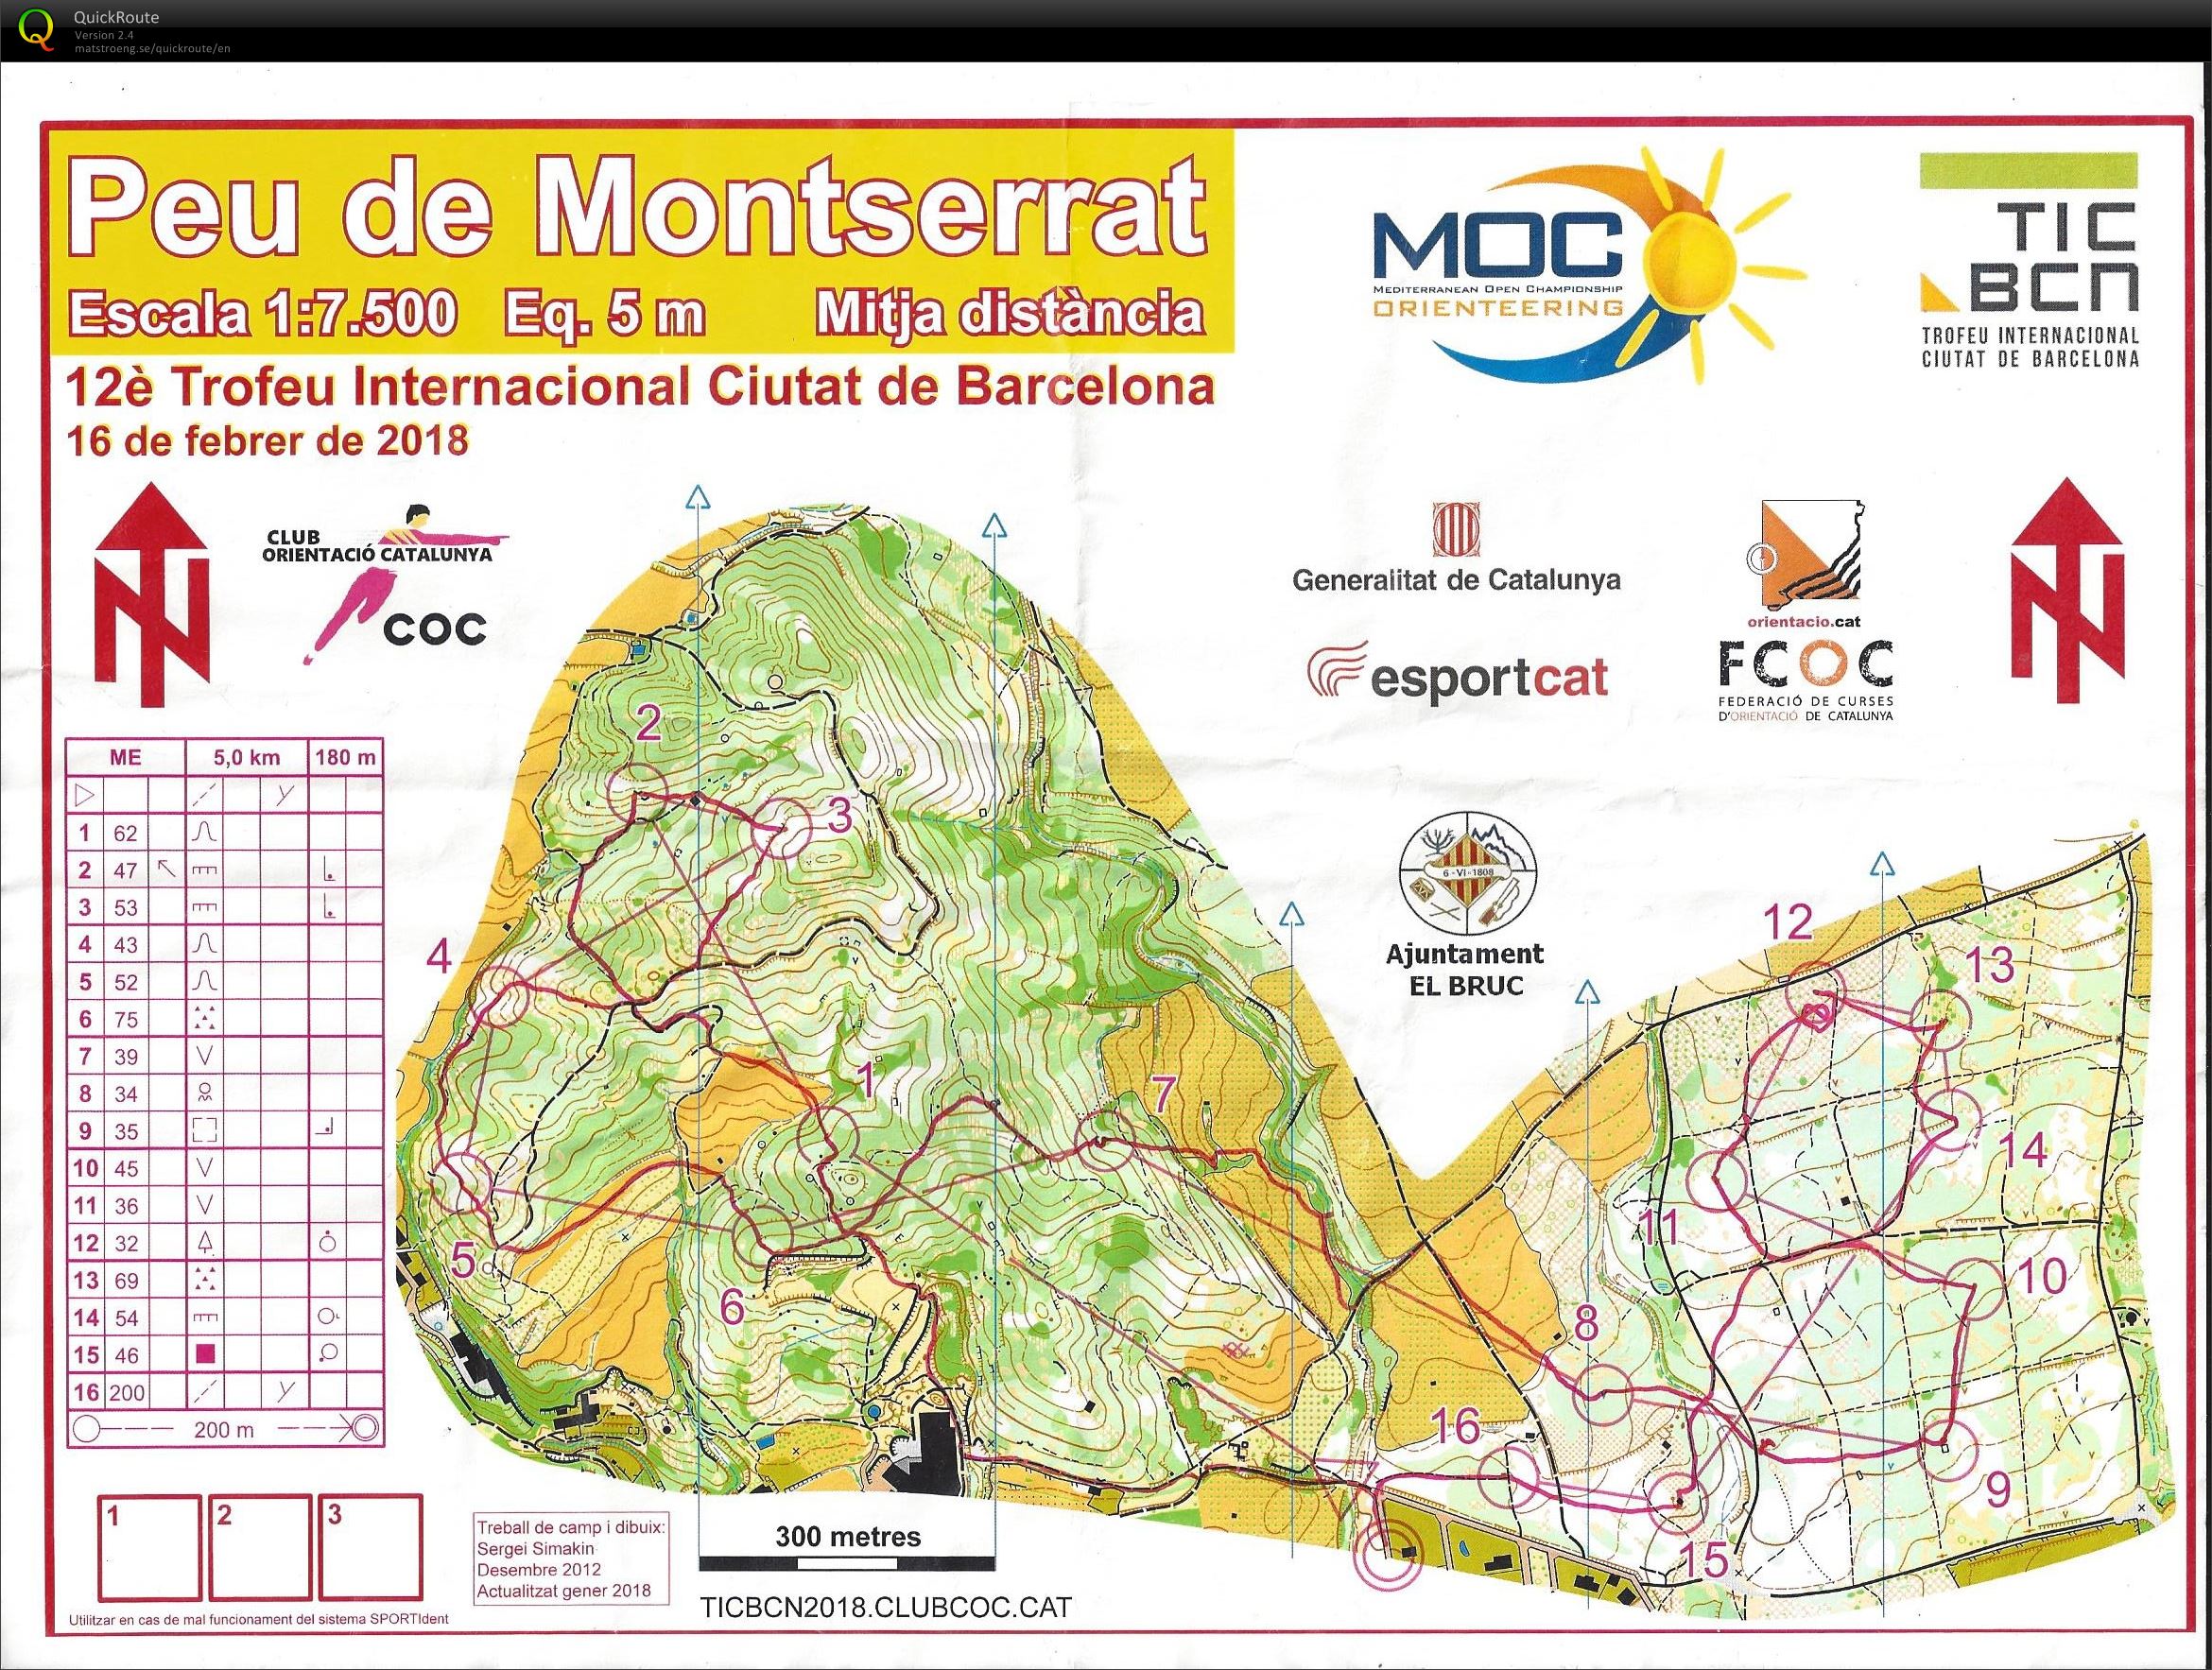 Middle Montserrat (16-02-2018)